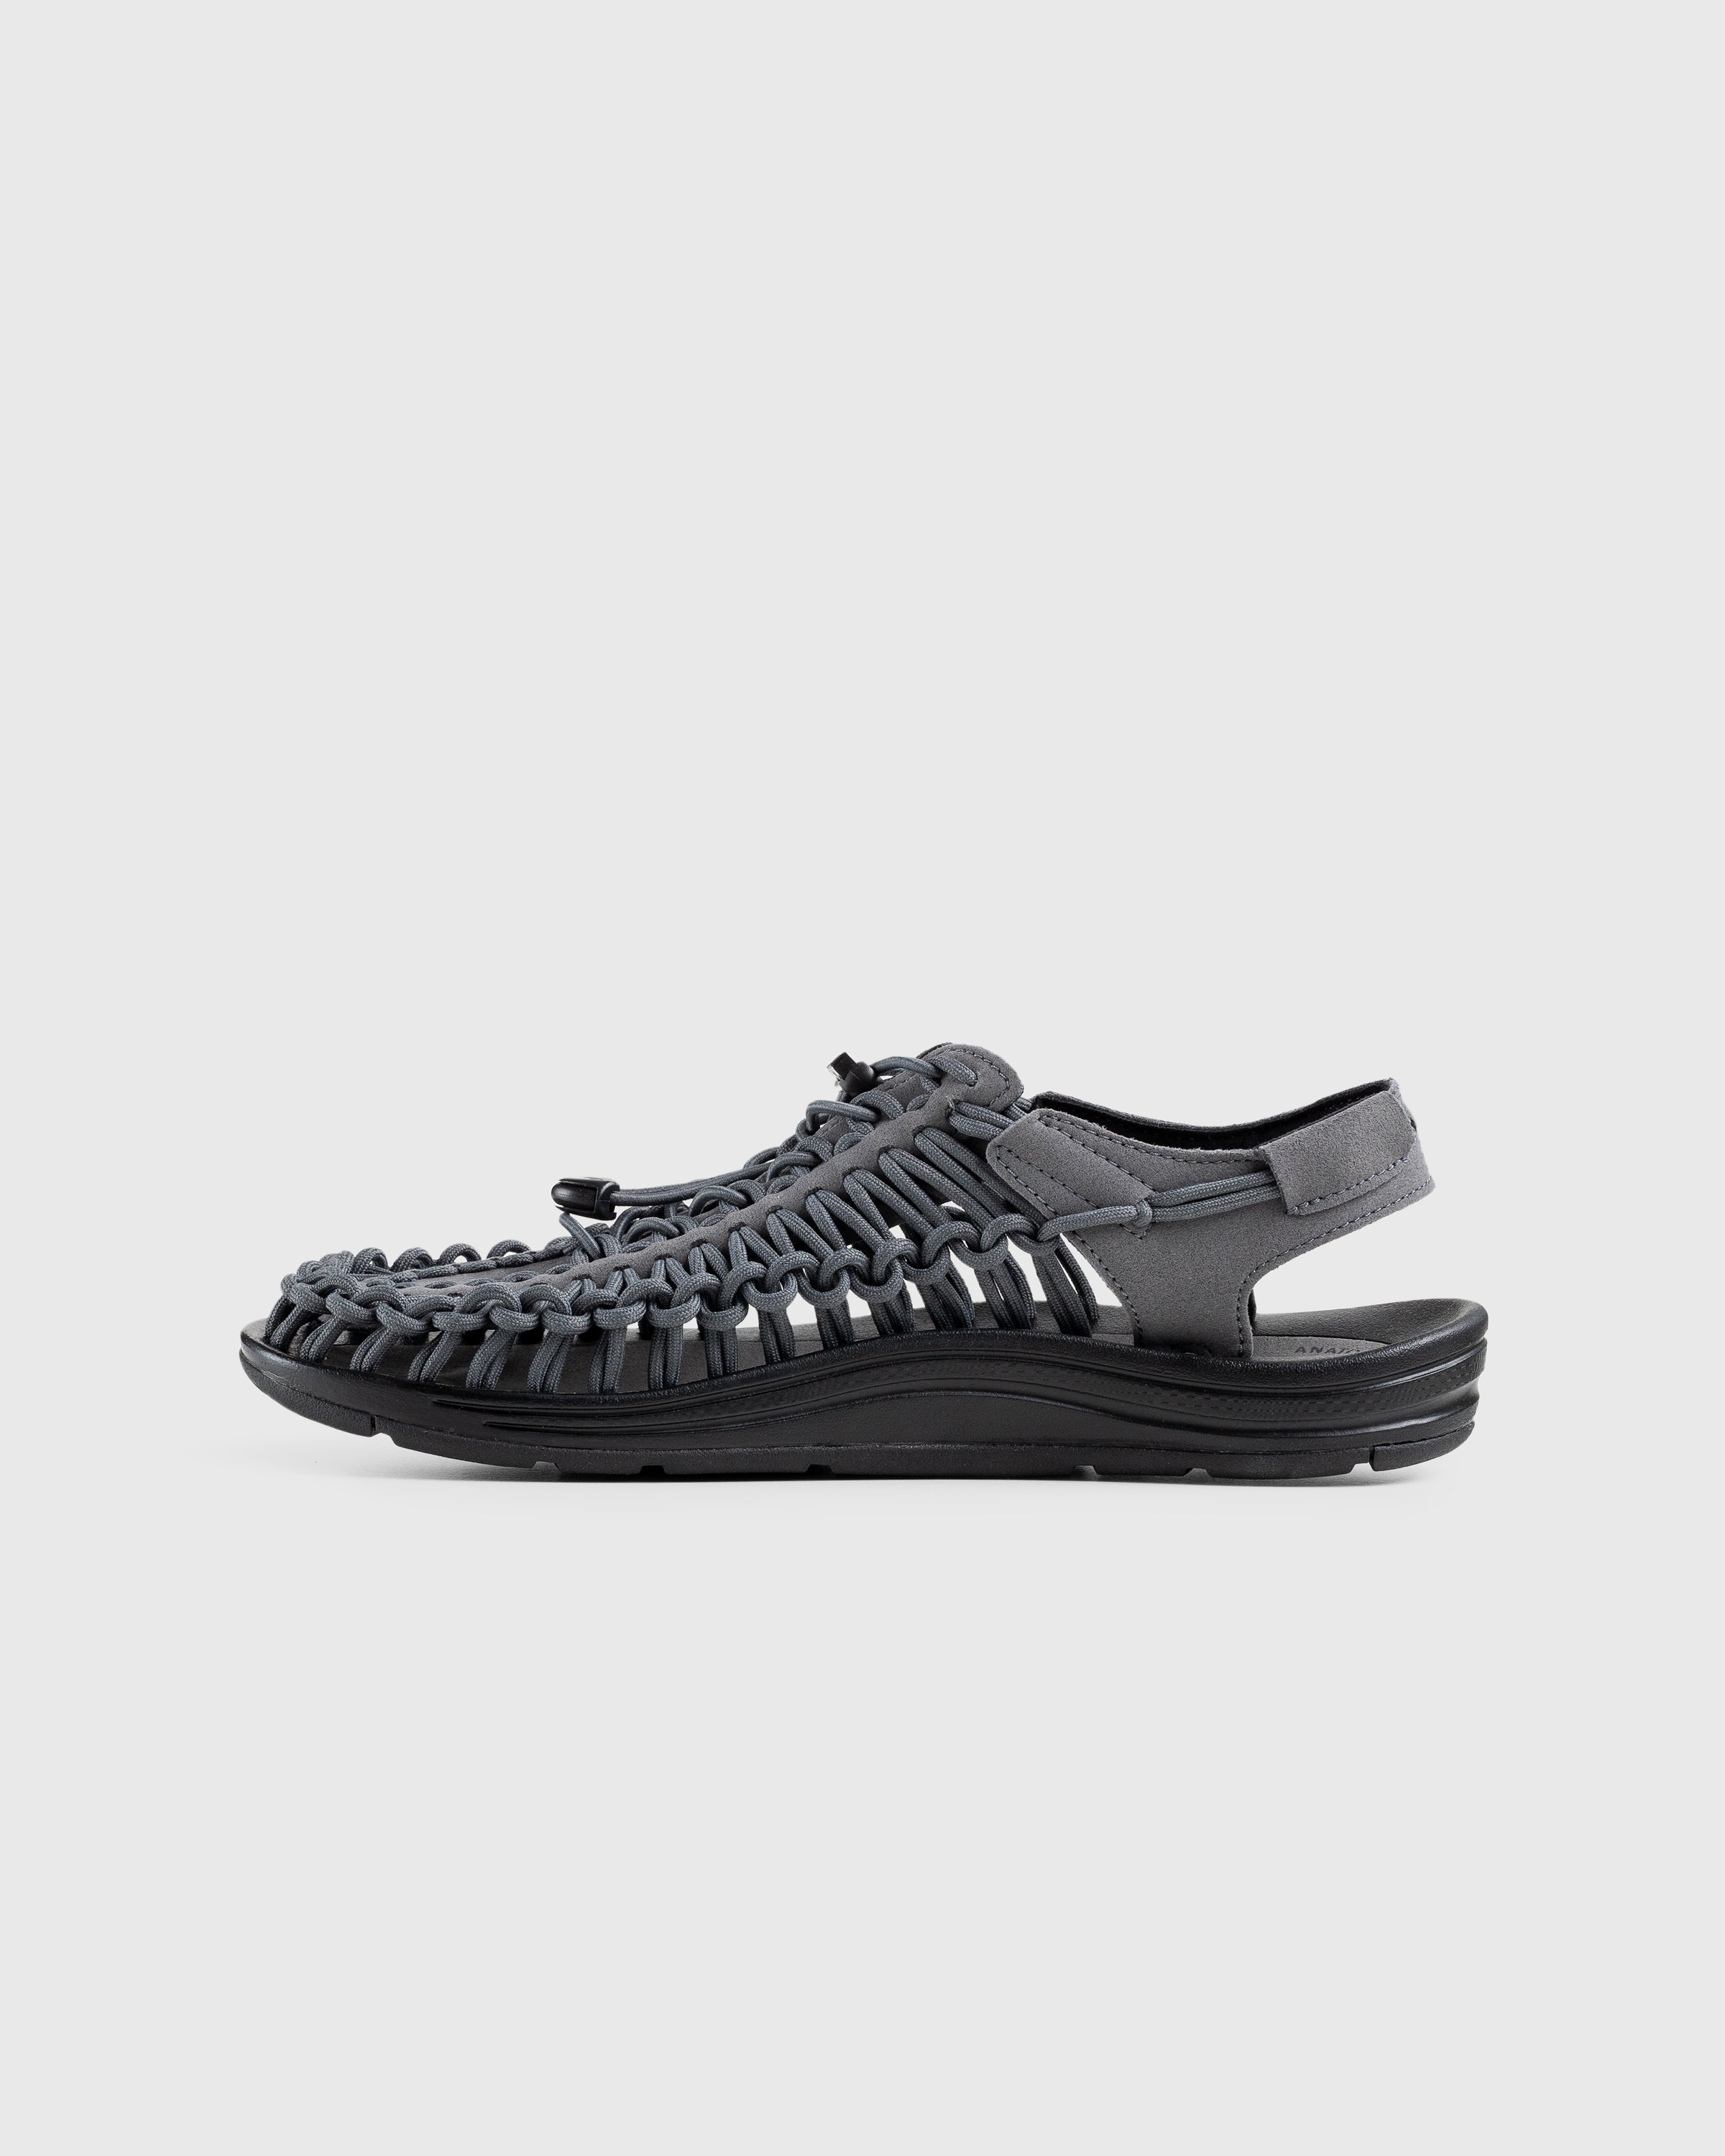 Keen - Uneek Magnet/Black - Footwear - Grey - Image 2